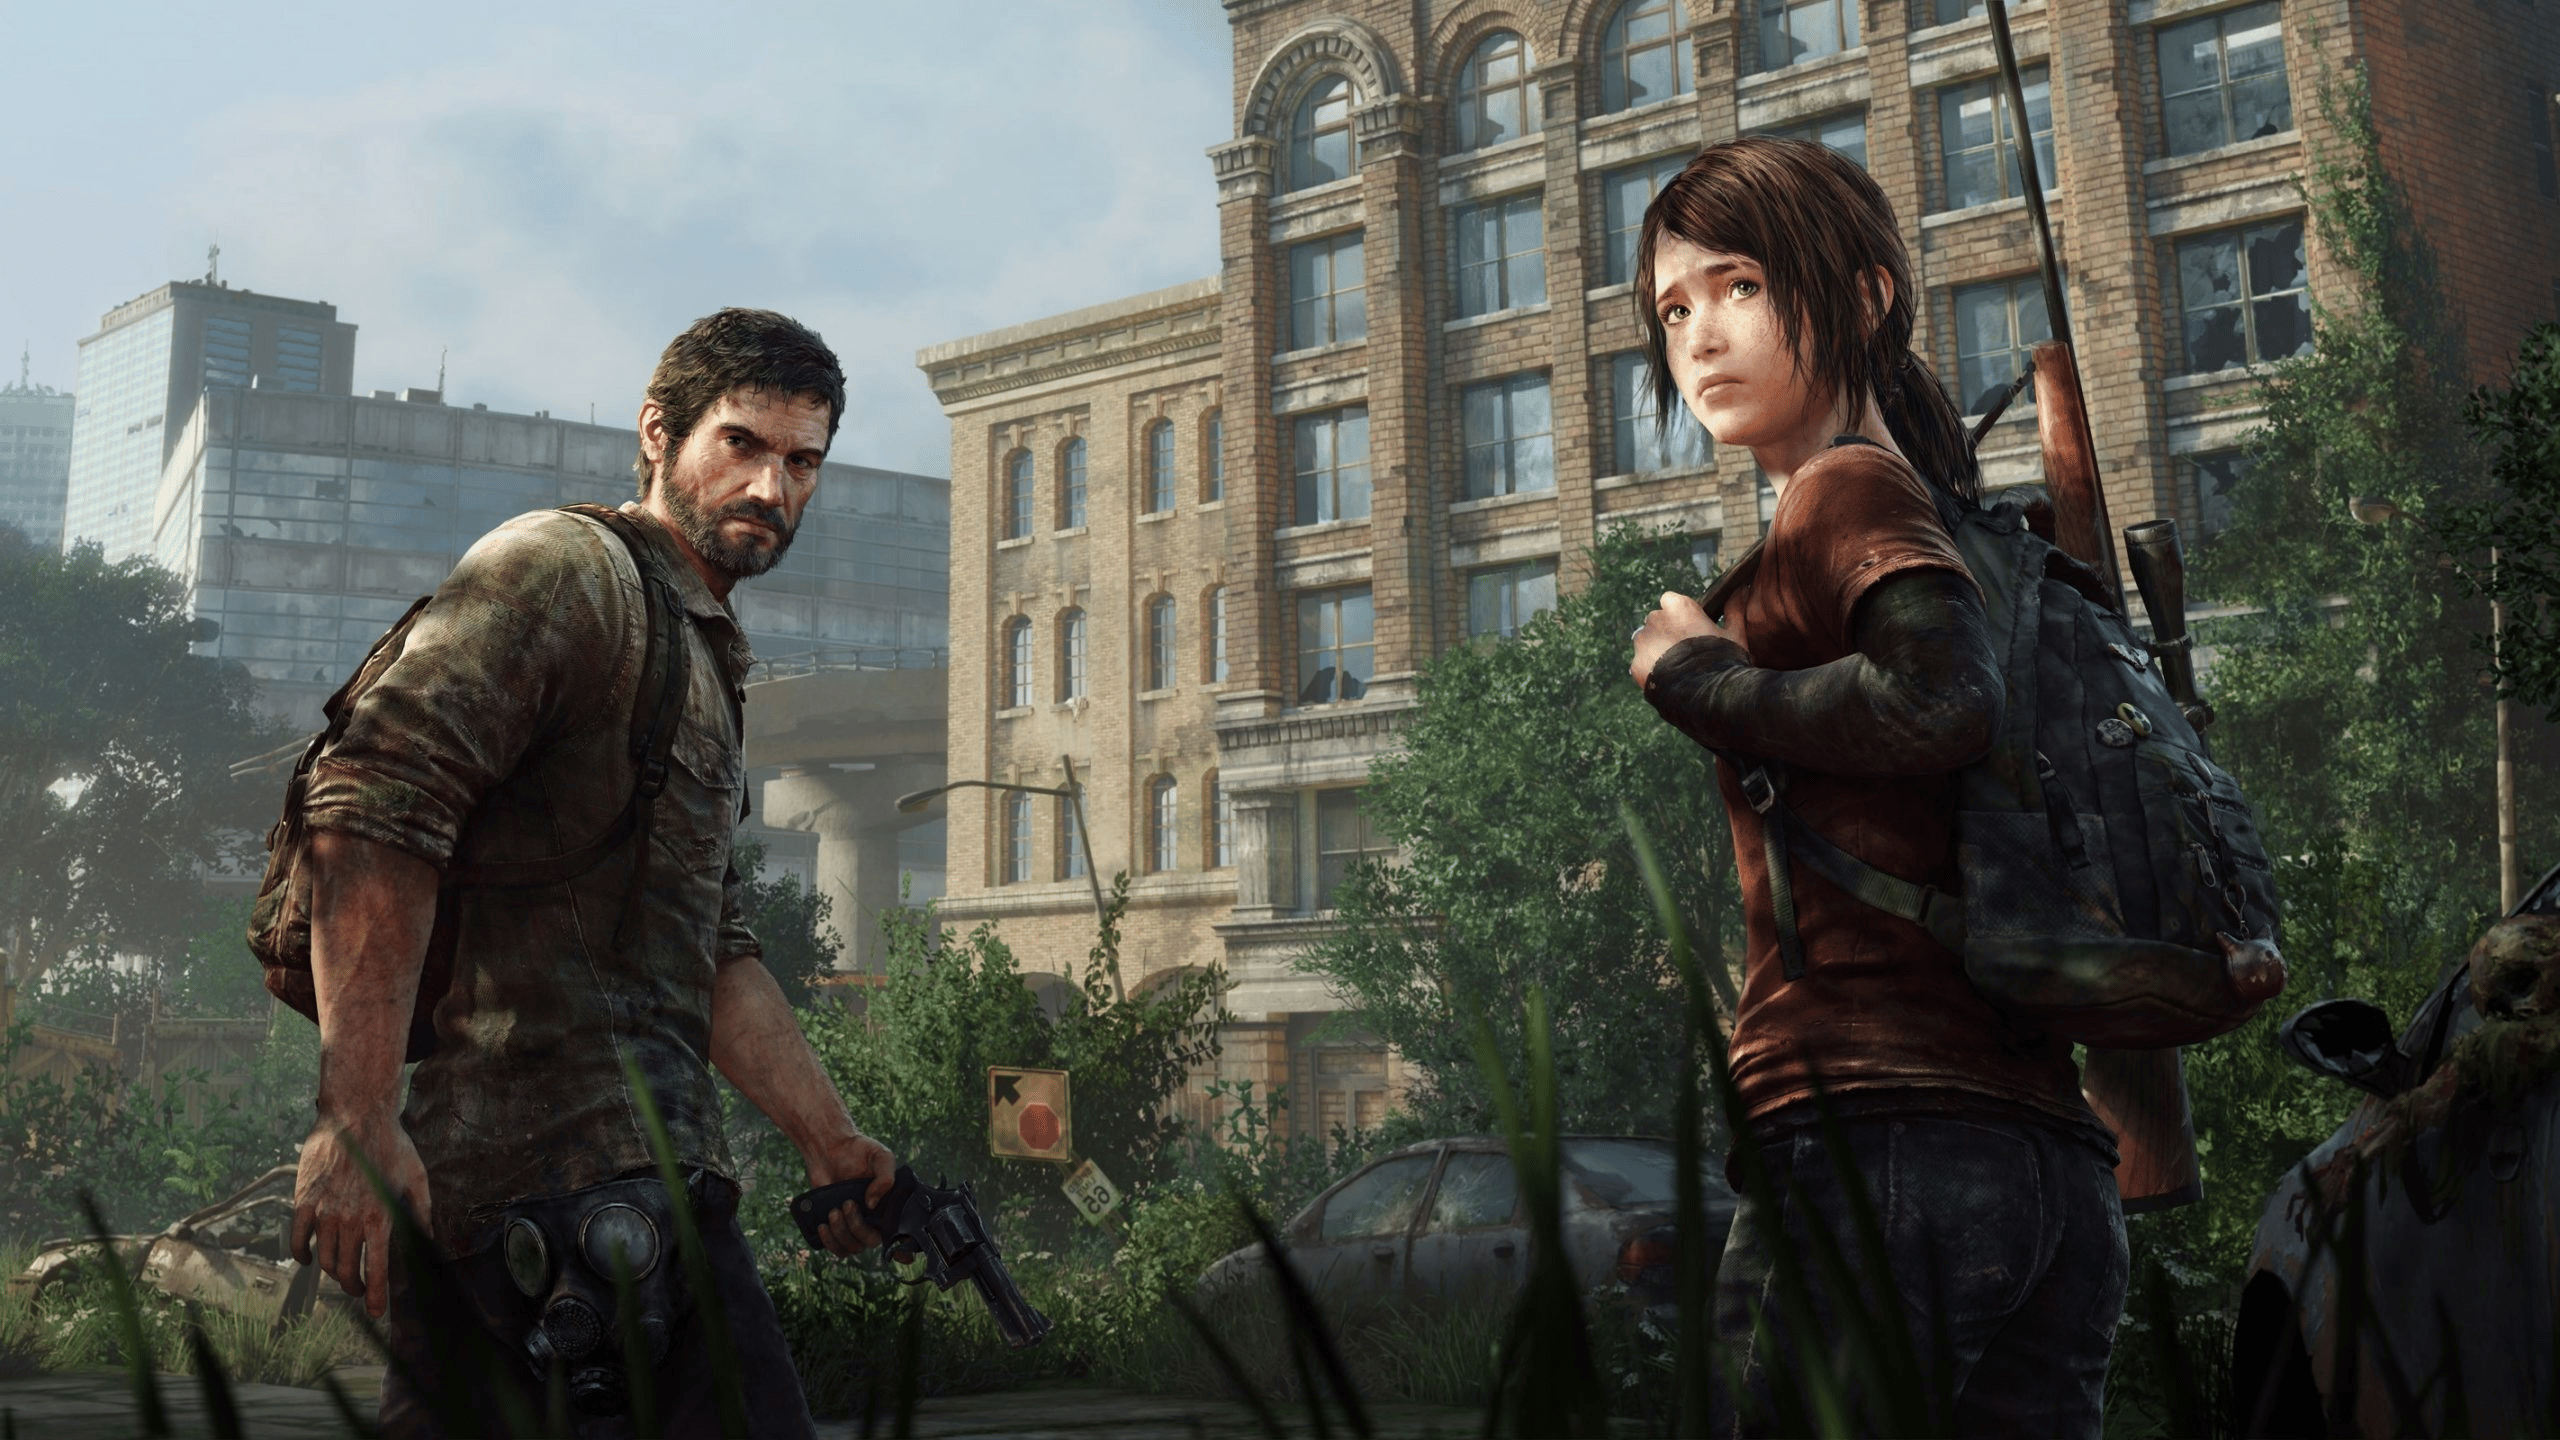 2022 07 26 170916501 - Джоэл и Элли из The Last of Us могут попасть в фортнайт